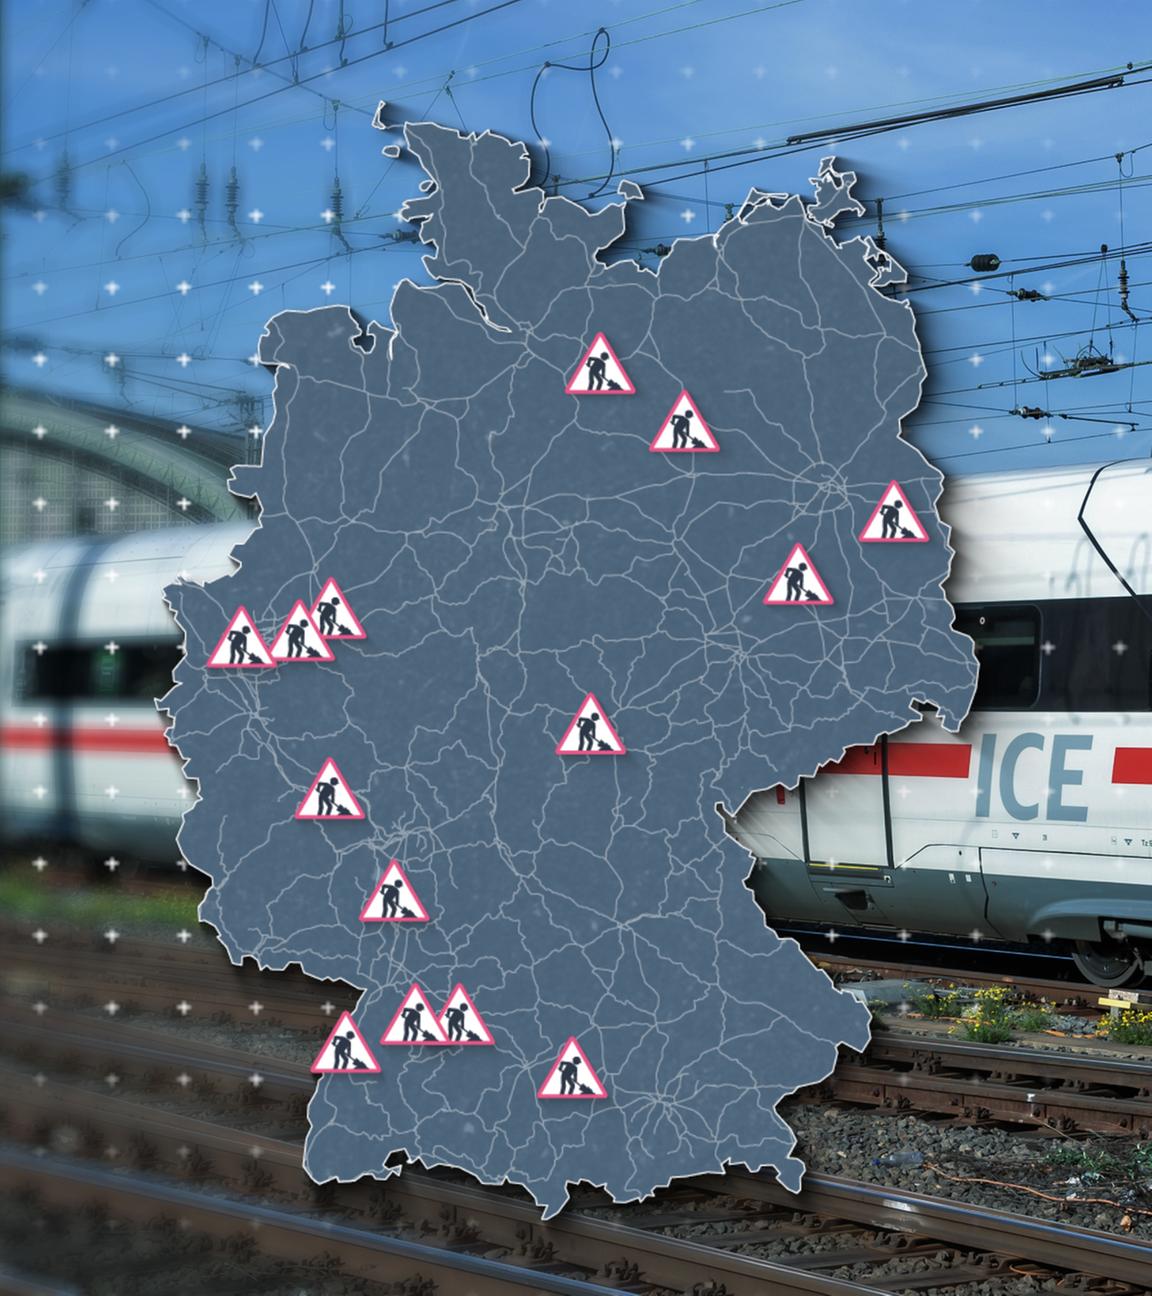 Ein ICE verlässt einen Bahnhof. Über den ICE wurde eine Karte von Deutschland gelegt, auf der Baustellen eintragen sind.